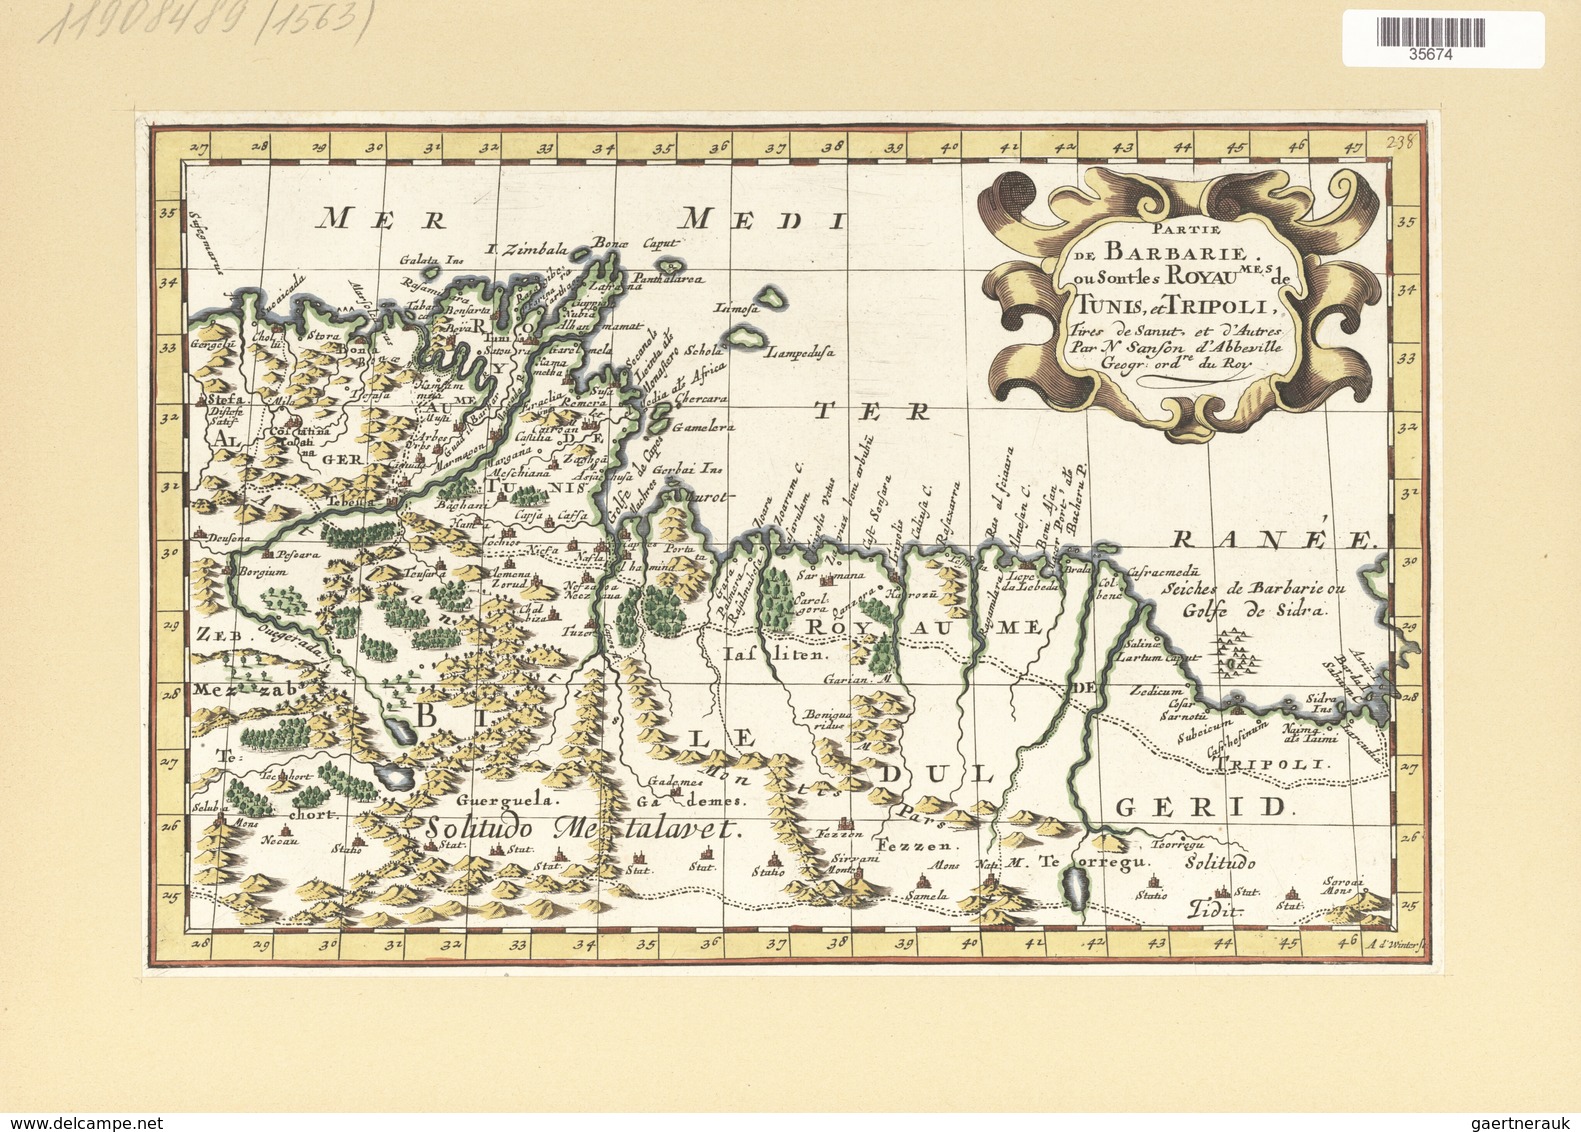 Landkarten Und Stiche: 1734. Partie De Barbarie, Ou Sont Les Royaumes De Tunis, Et Tripoli; By A.d W - Geographie